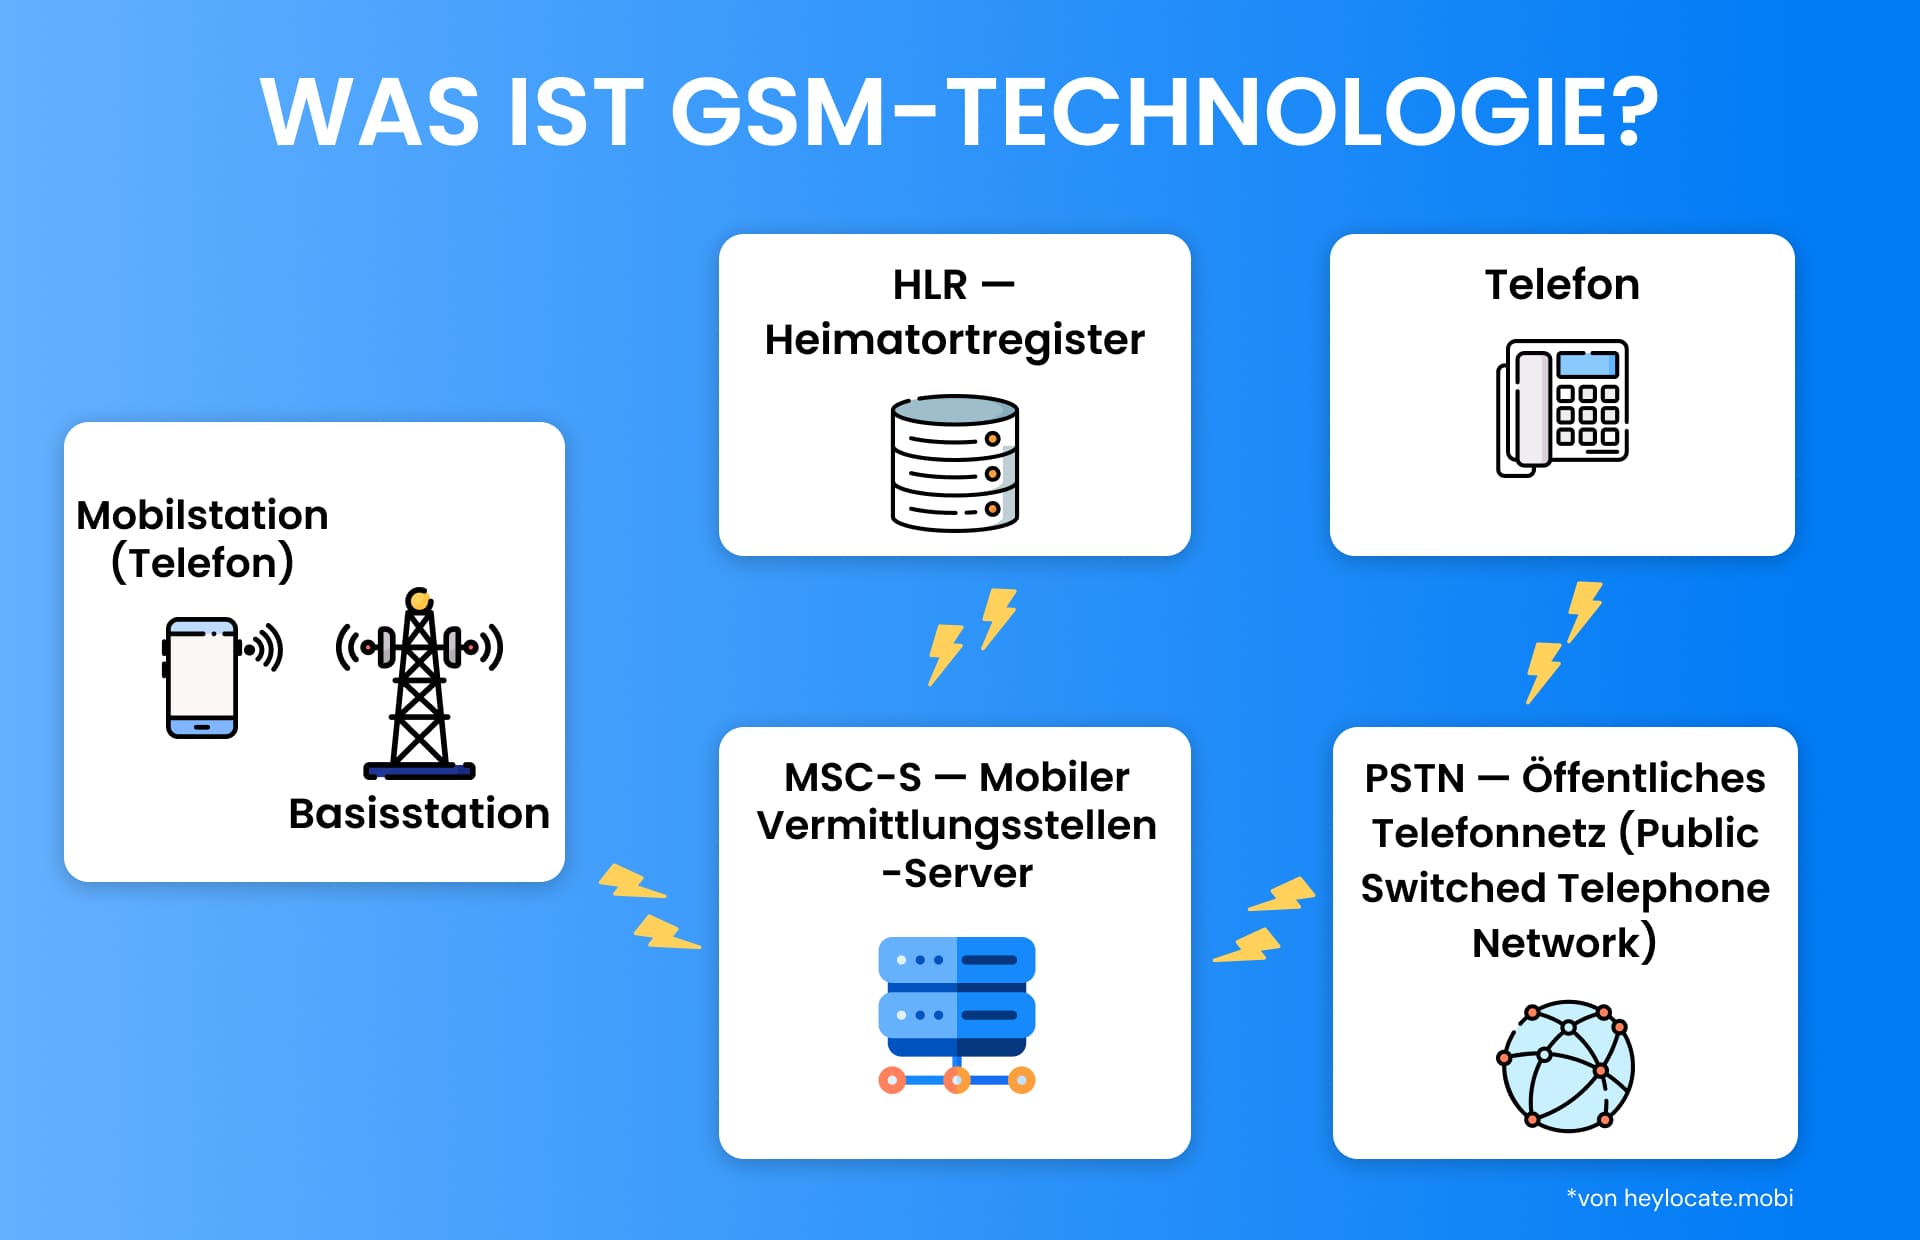 Lehrdiagramm, das die Komponenten der GSM-Technologie erklärt, einschließlich einer Mobilstation, die mit einer Basisstation verbunden ist